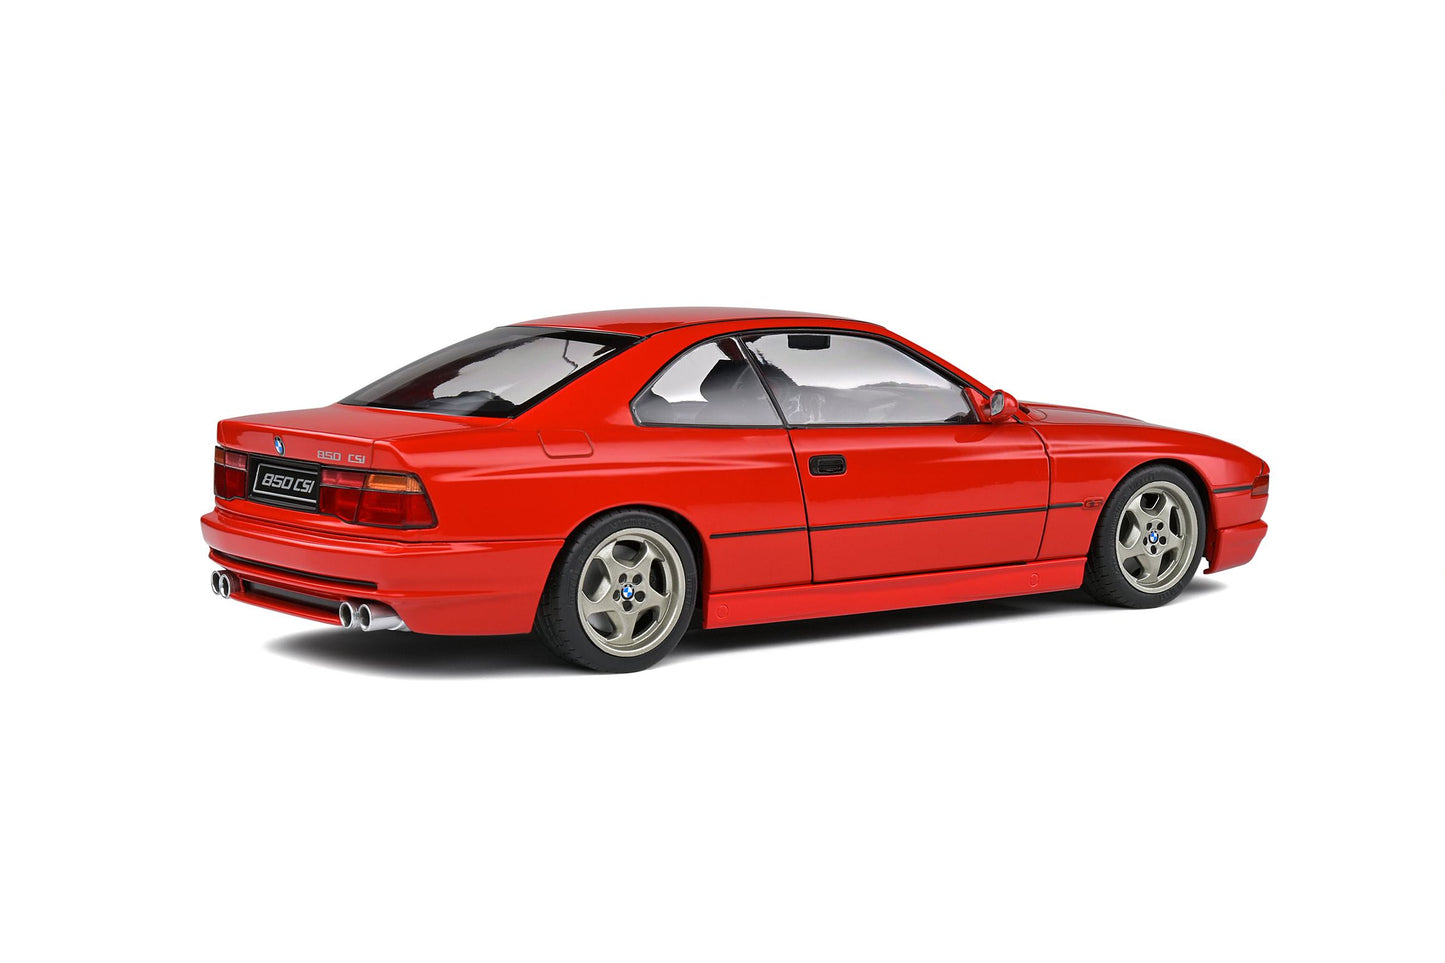 1:18 BMW 850 CSI Coupé E31, rød, 1990, Solido 1807002, delvis åben model